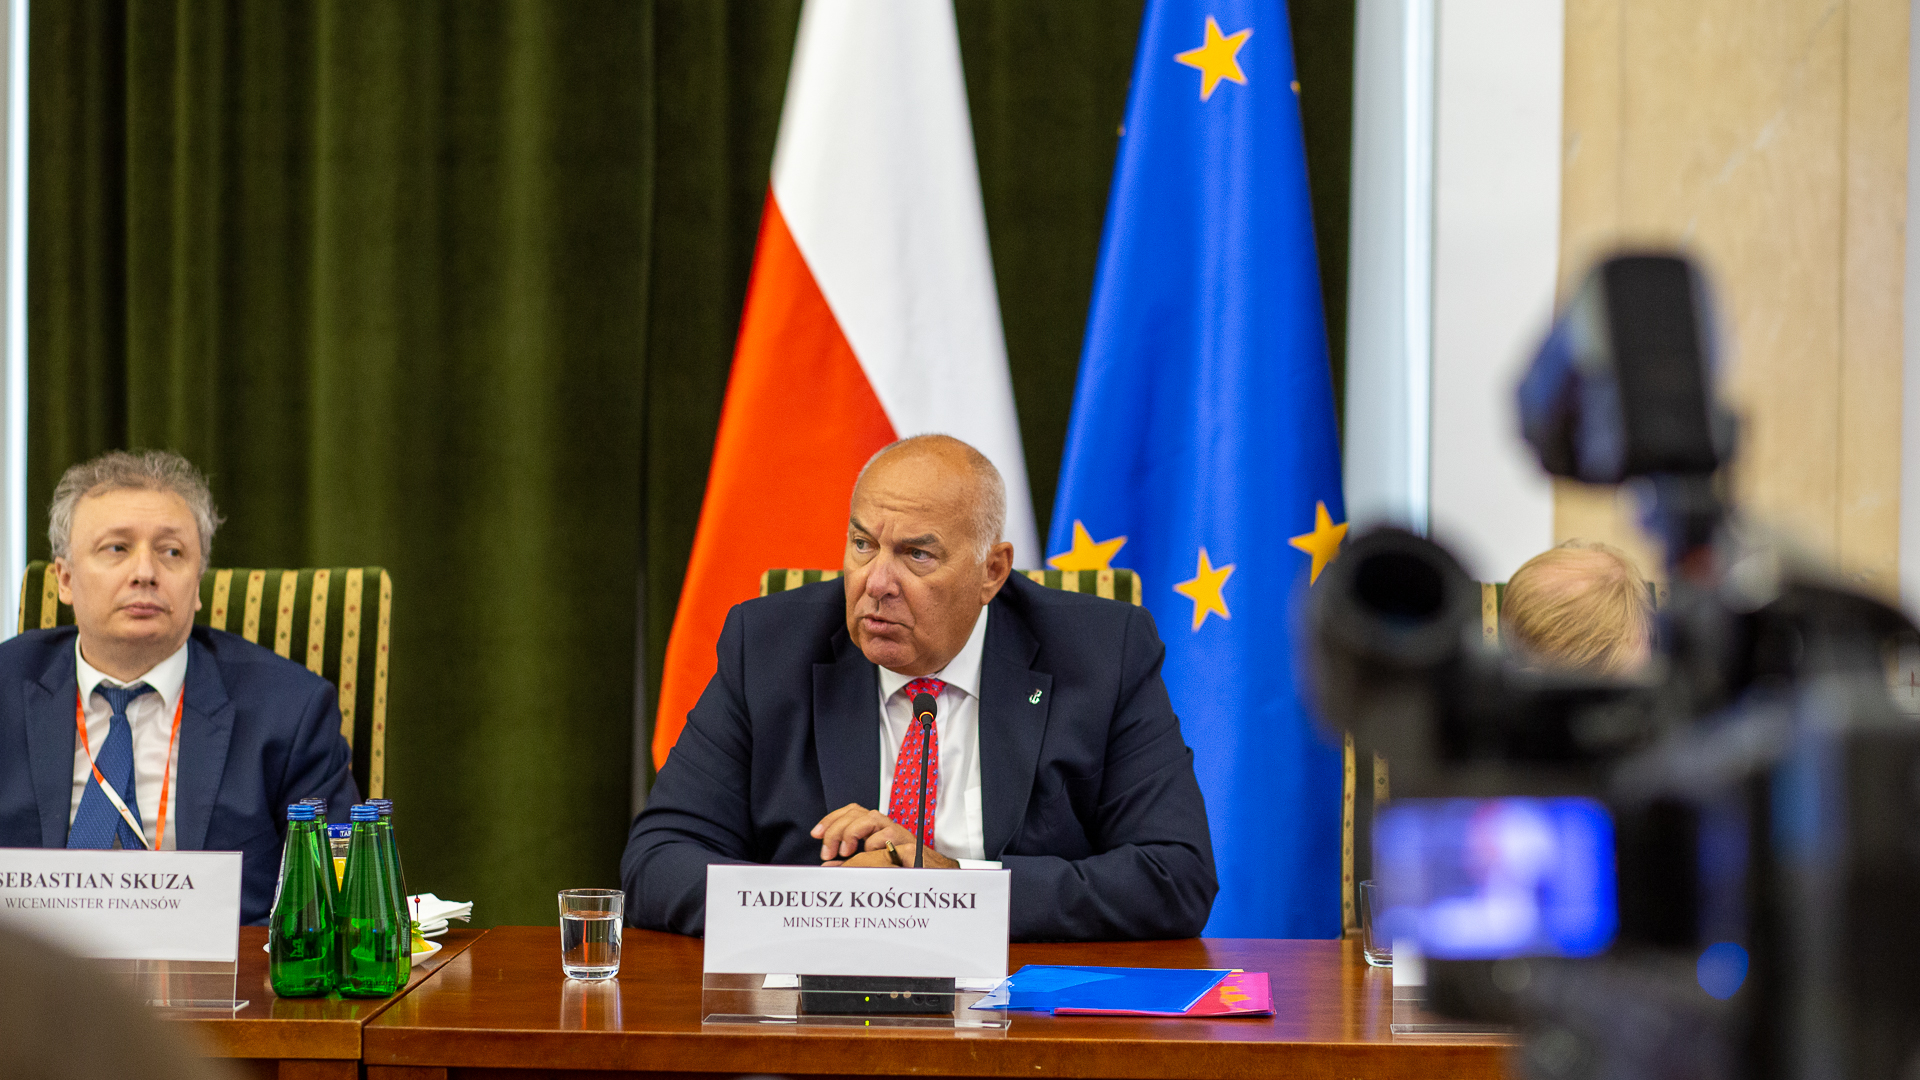 Minister finansów Tadeusz Kościński, wiceminister finansów Sebastian Skuza siedzą za stołem w tle flaga Polski i UE